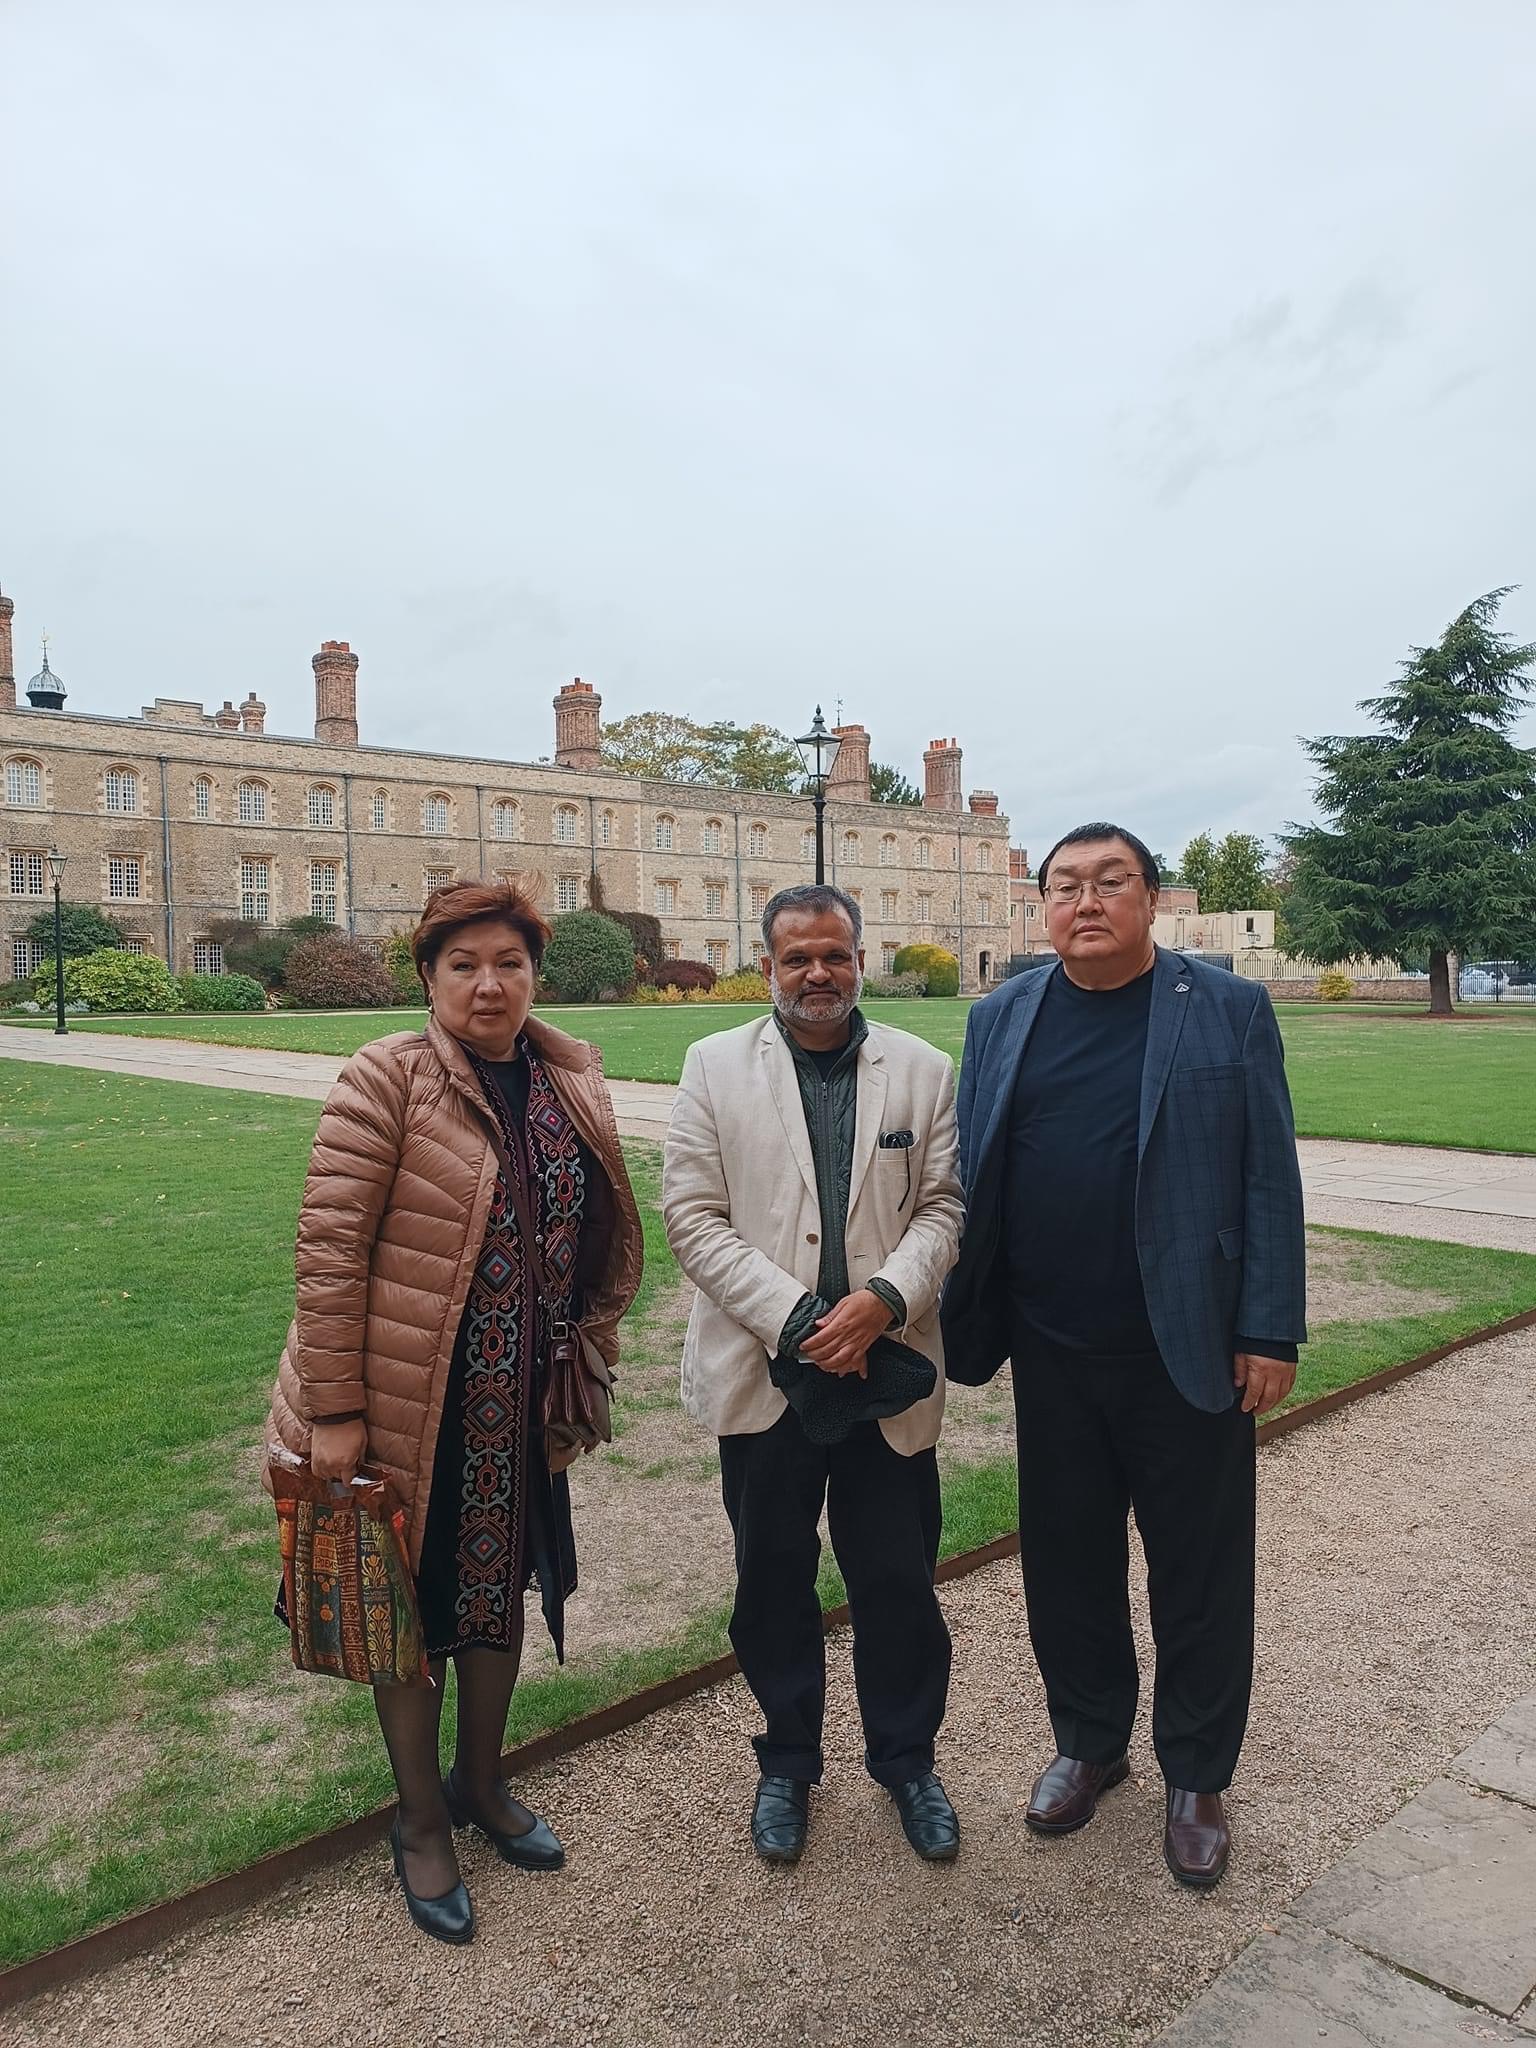 Состоялся официальный визит Ректора и проректора Дипломатической академии в Кембриджский университет. Встреча была с профессором Сиддхартх Саксена. Стороны договорились относительно будущего сотрудничества.